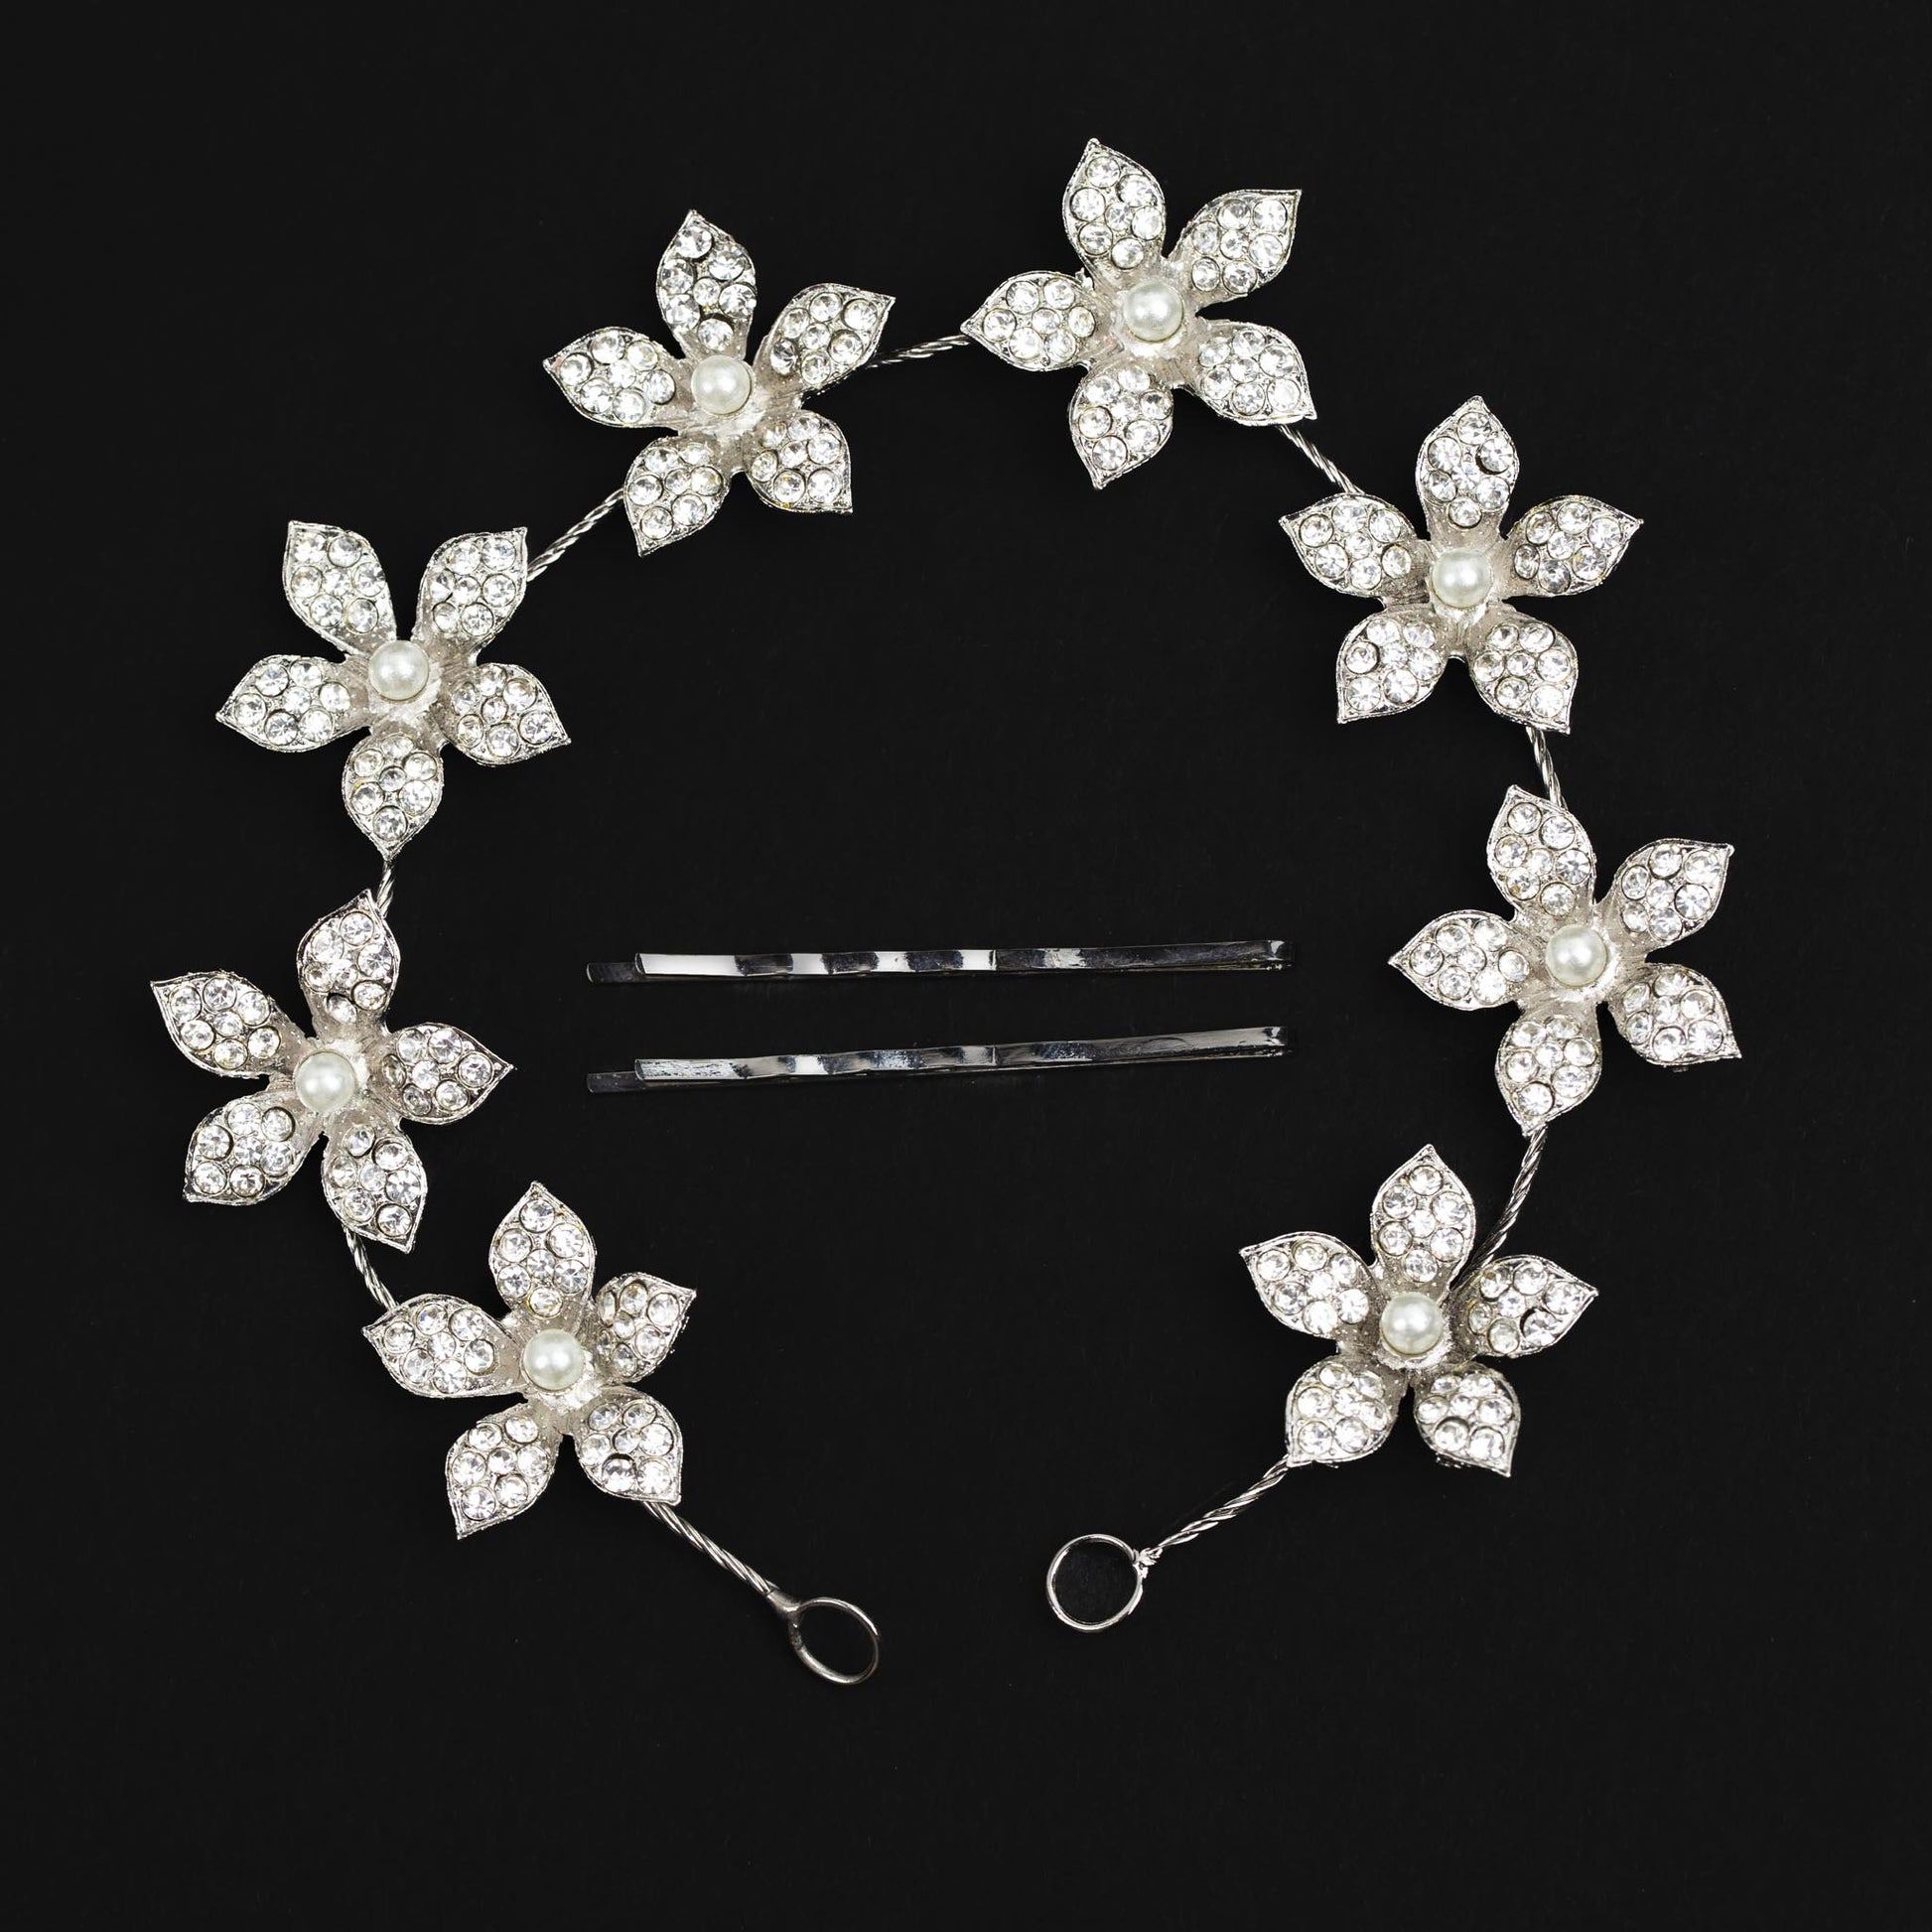 Diademă elegantă maleabilă cu strasuri, perle, flori - Argintiu